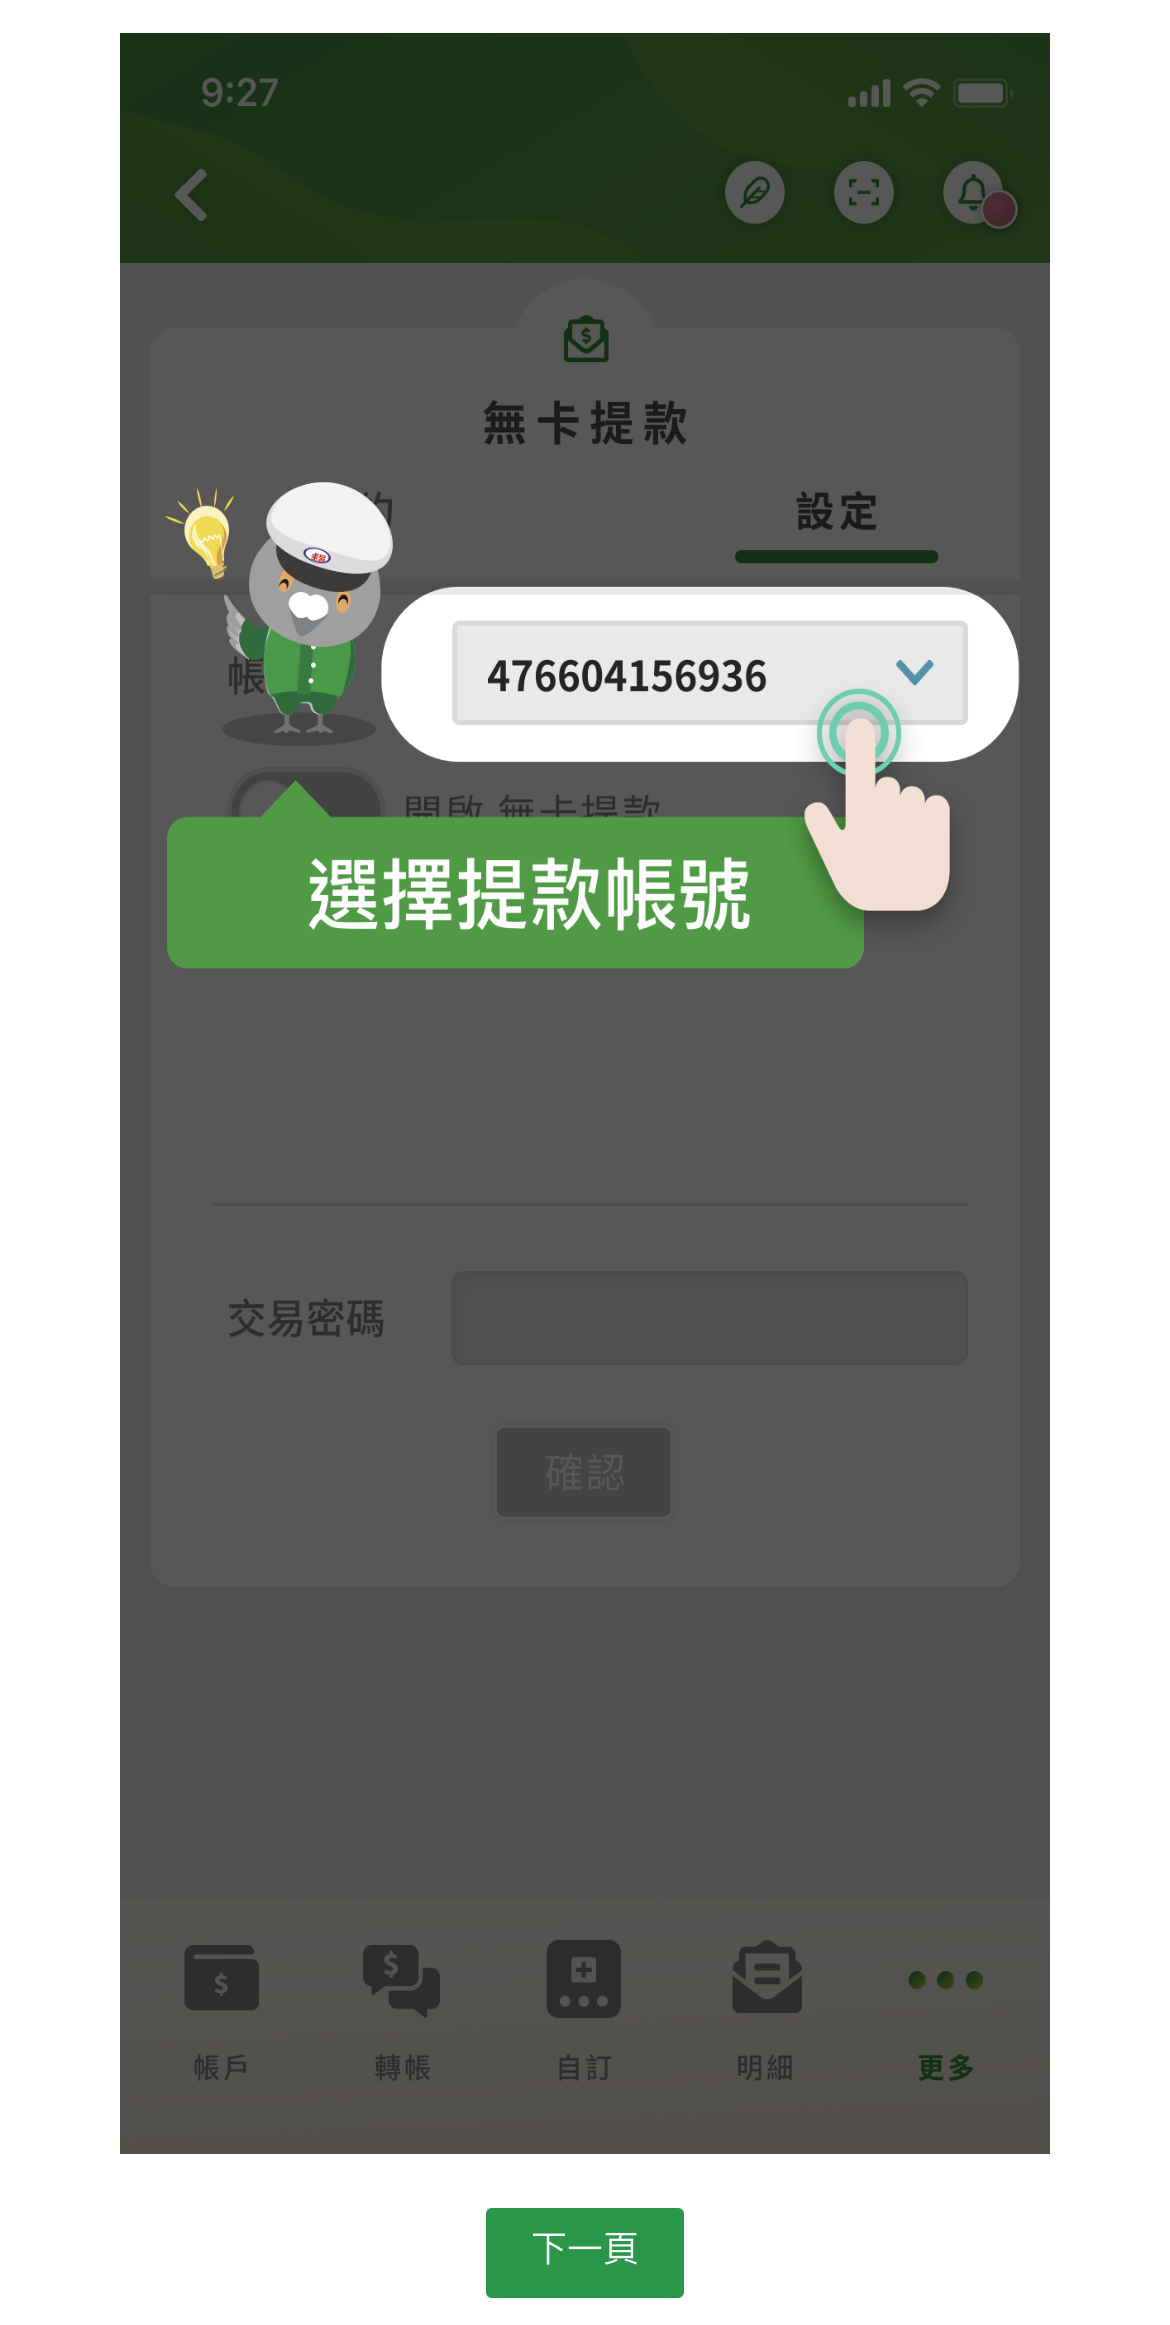 中華郵政行動郵局APP新增「錢包」功能 整合收付款、無卡存提款服務 - 電腦王阿達